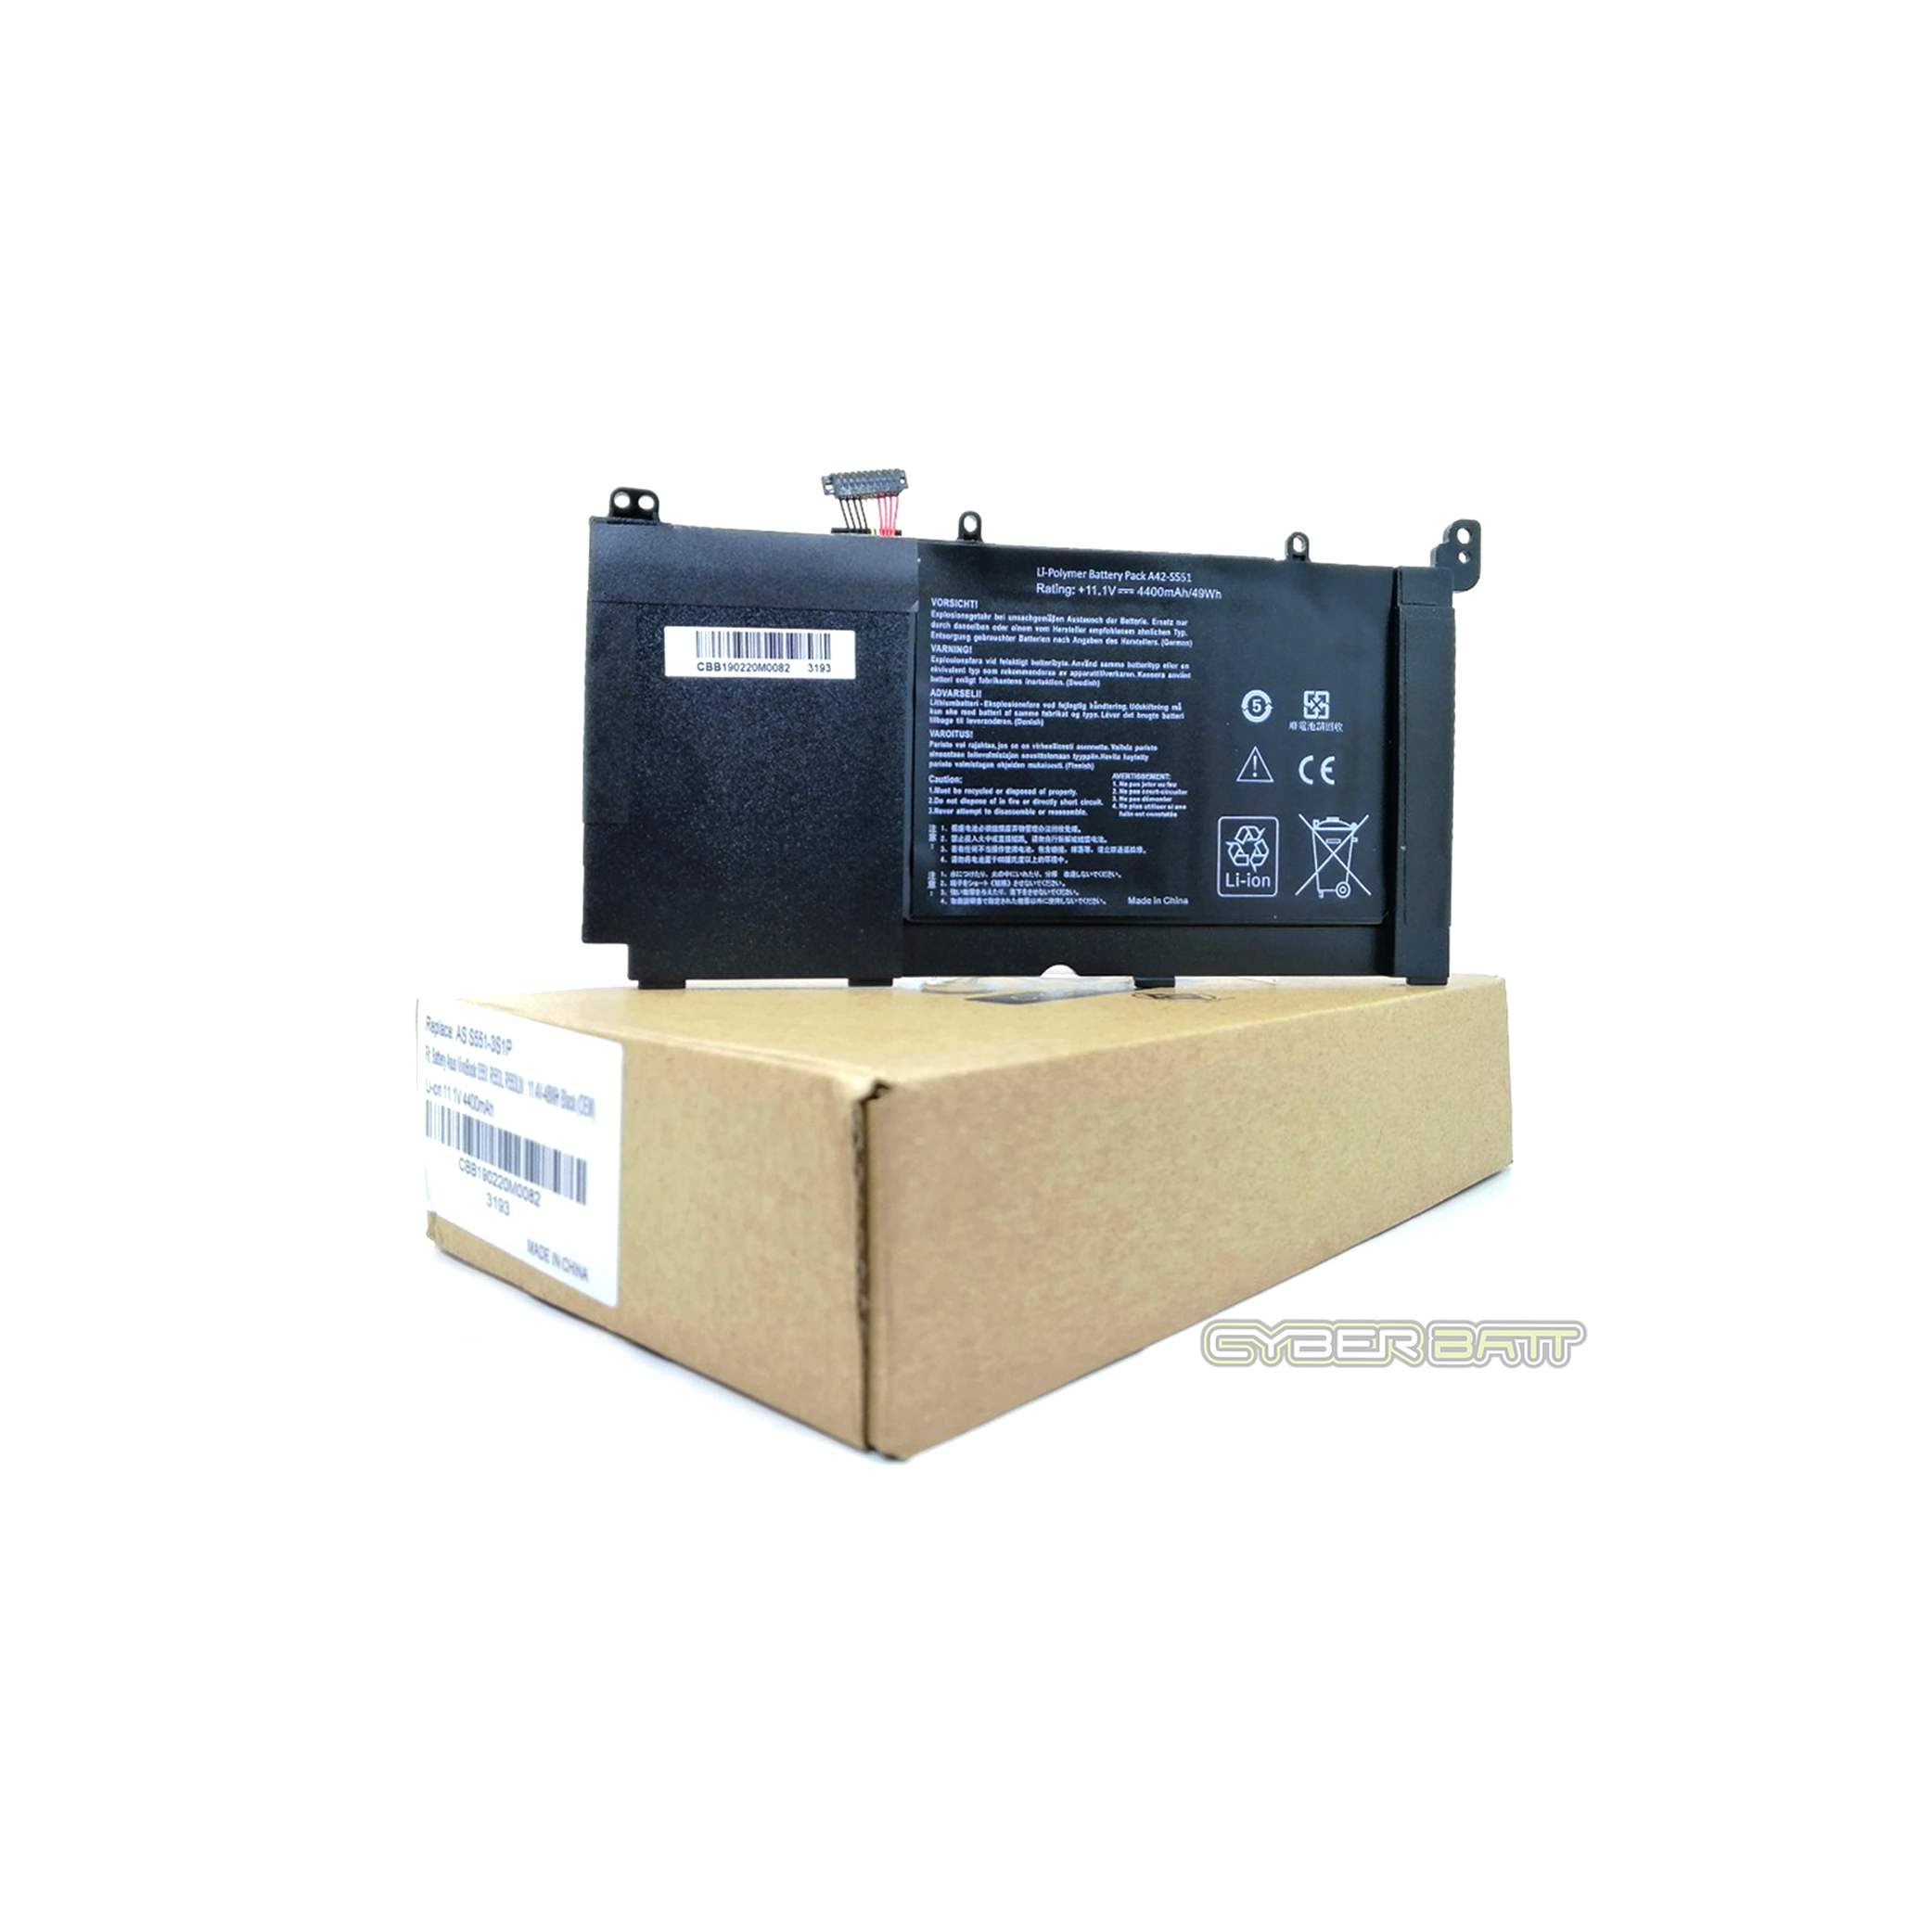 Battery Asus VivoBook S551 R553L R553LN : 11.1V-4400mAh/49Wh Black (CBB)